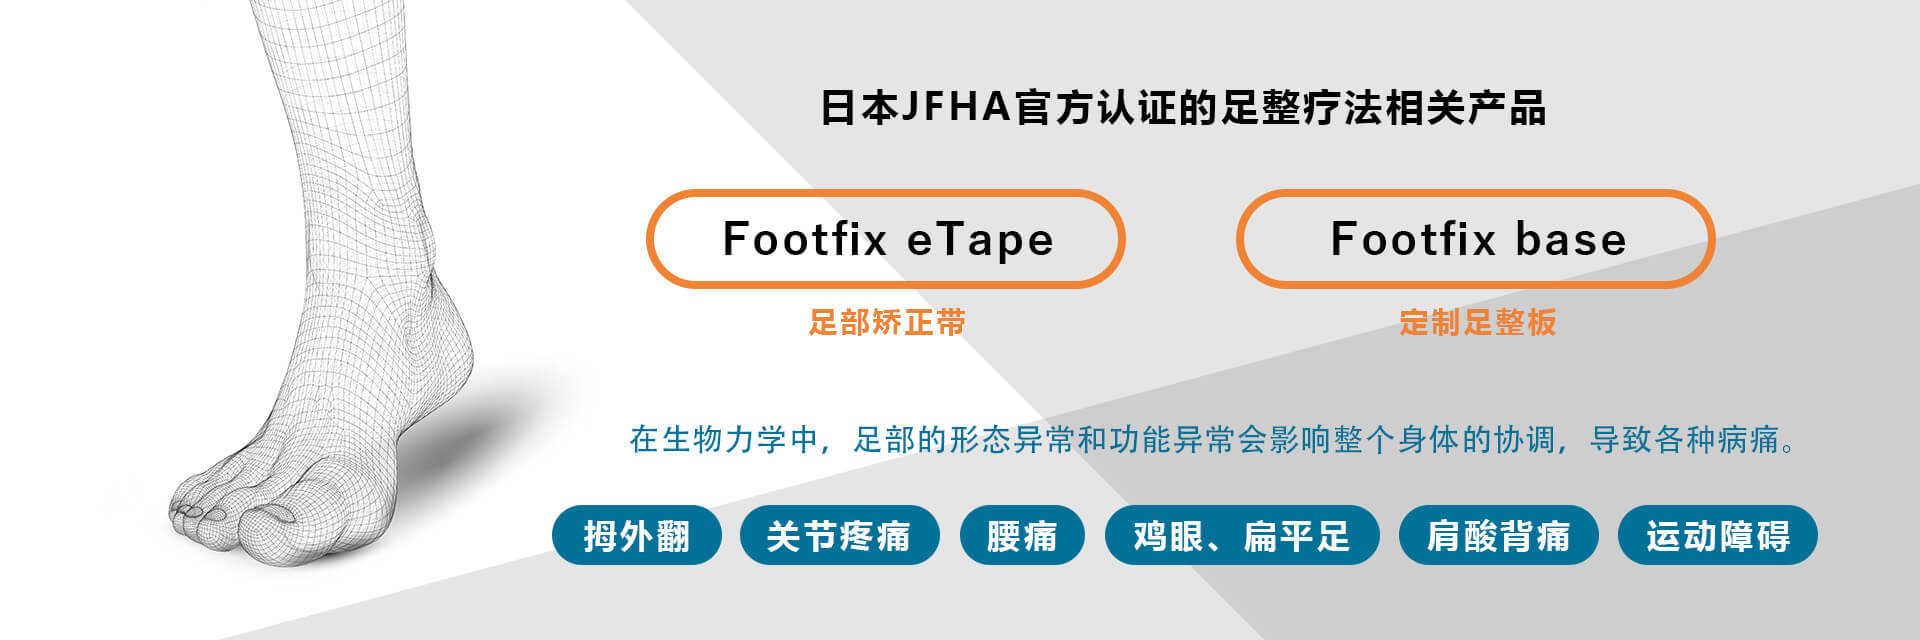 日本JFHA官方认证的足整疗法相关产品